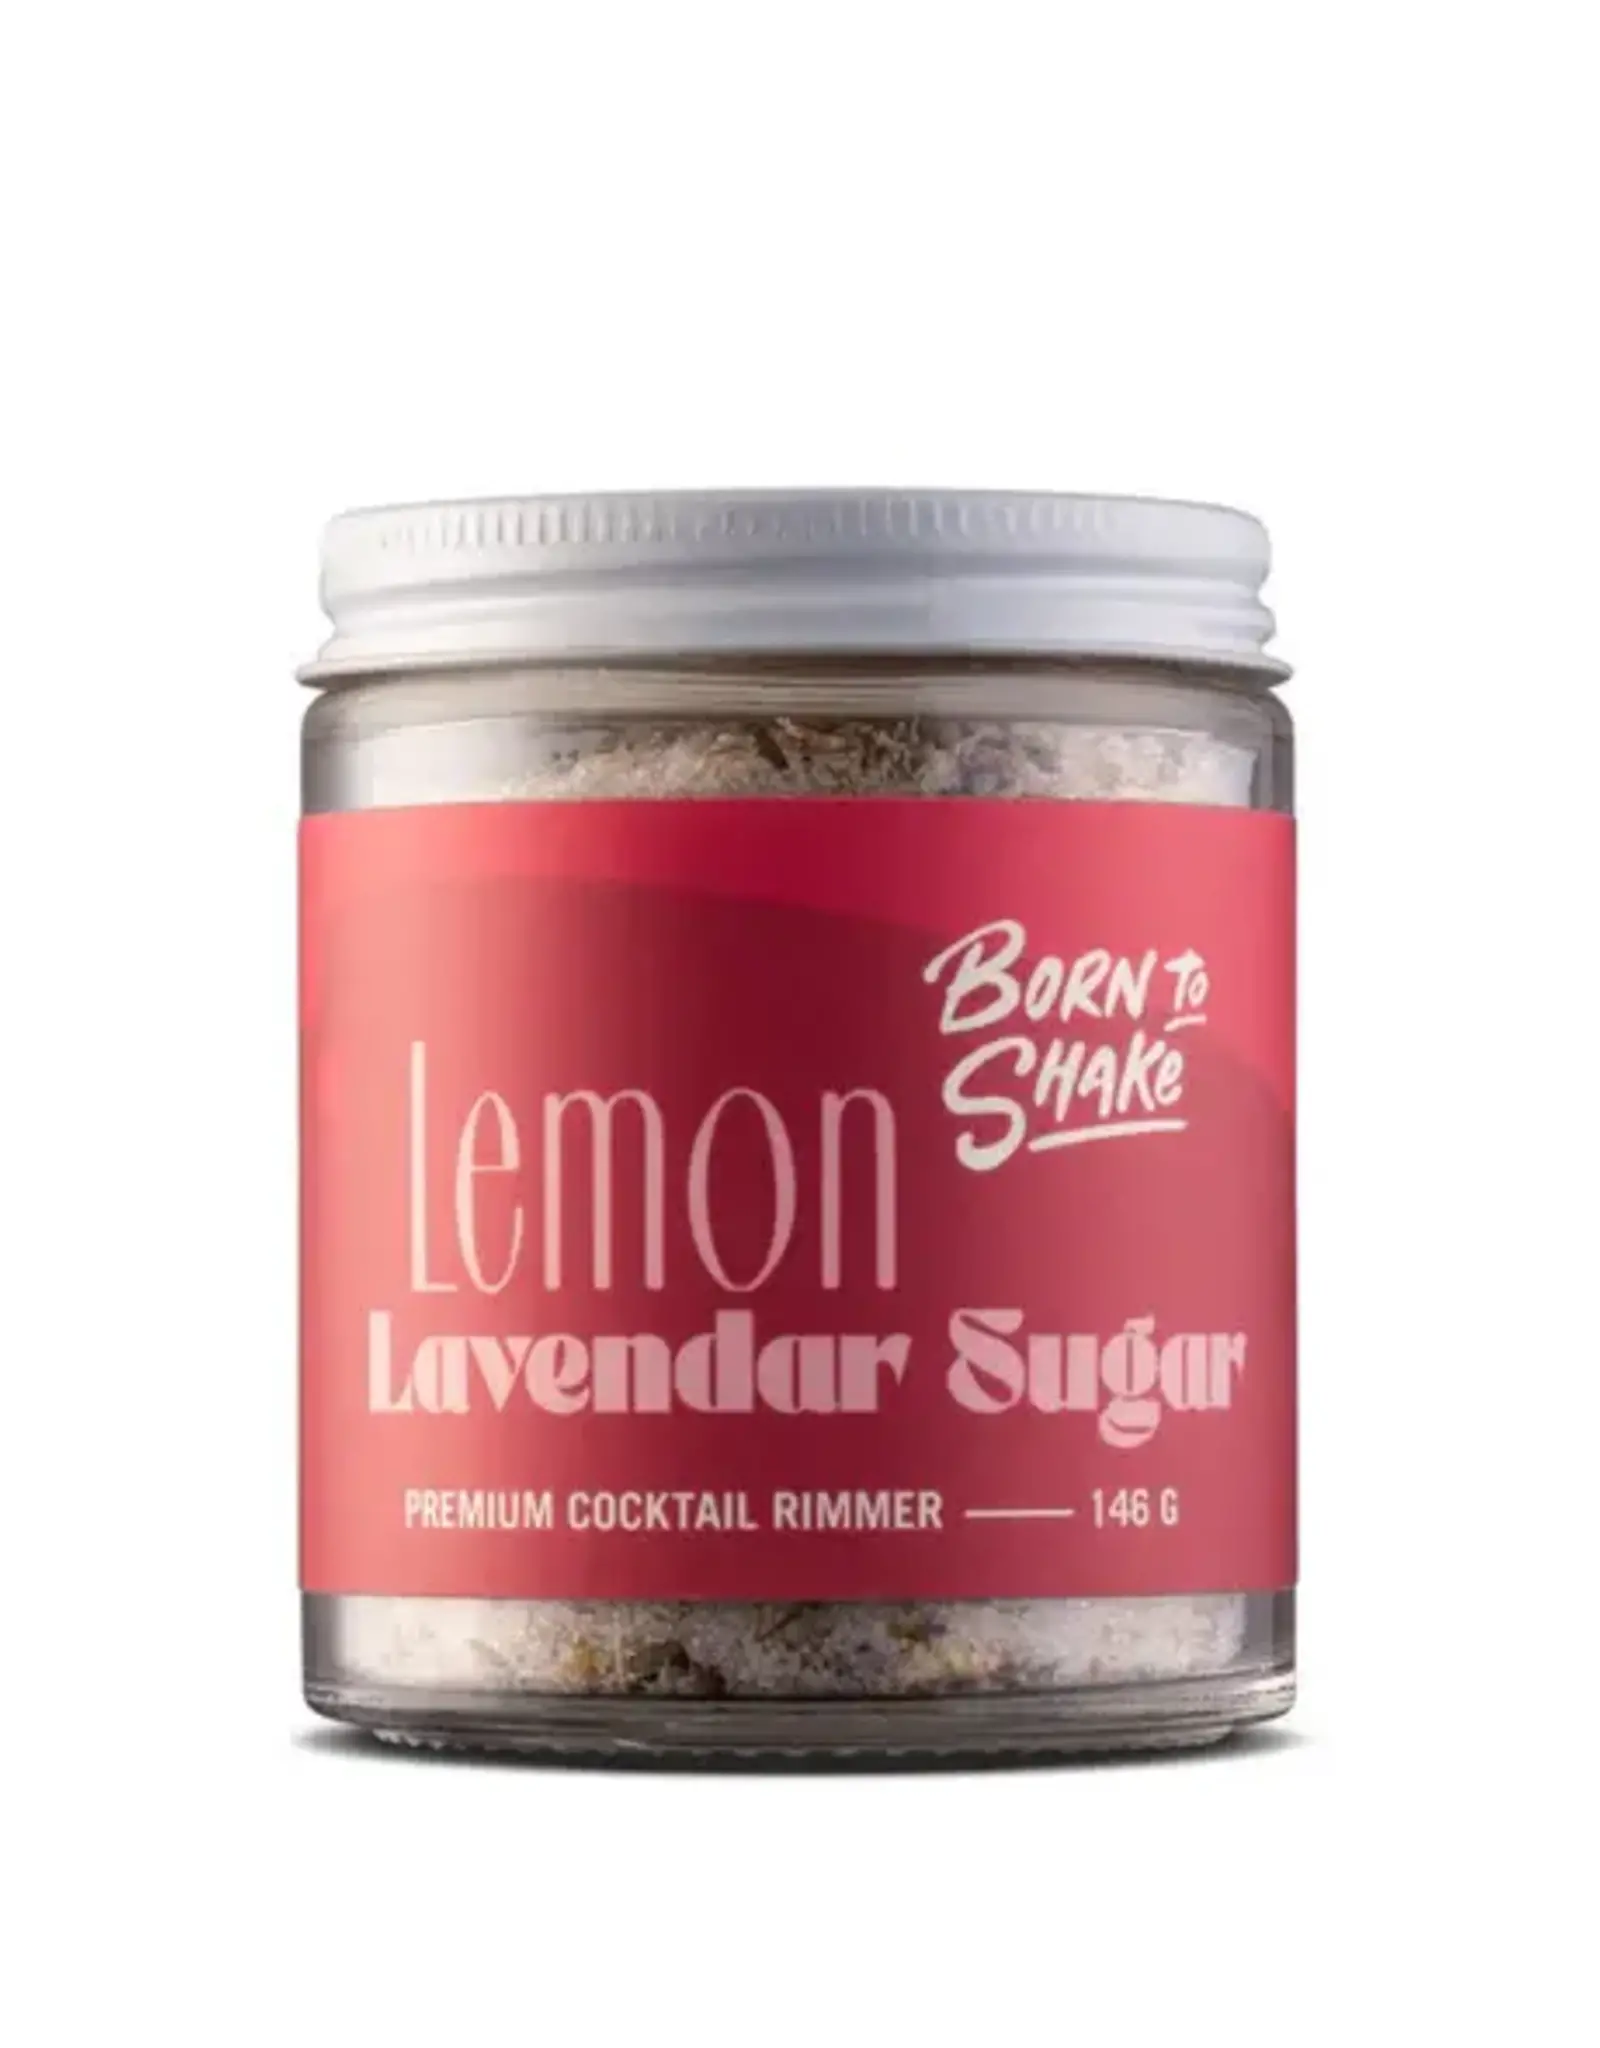 Lemon Lavender Sugar Cocktail Rimmer